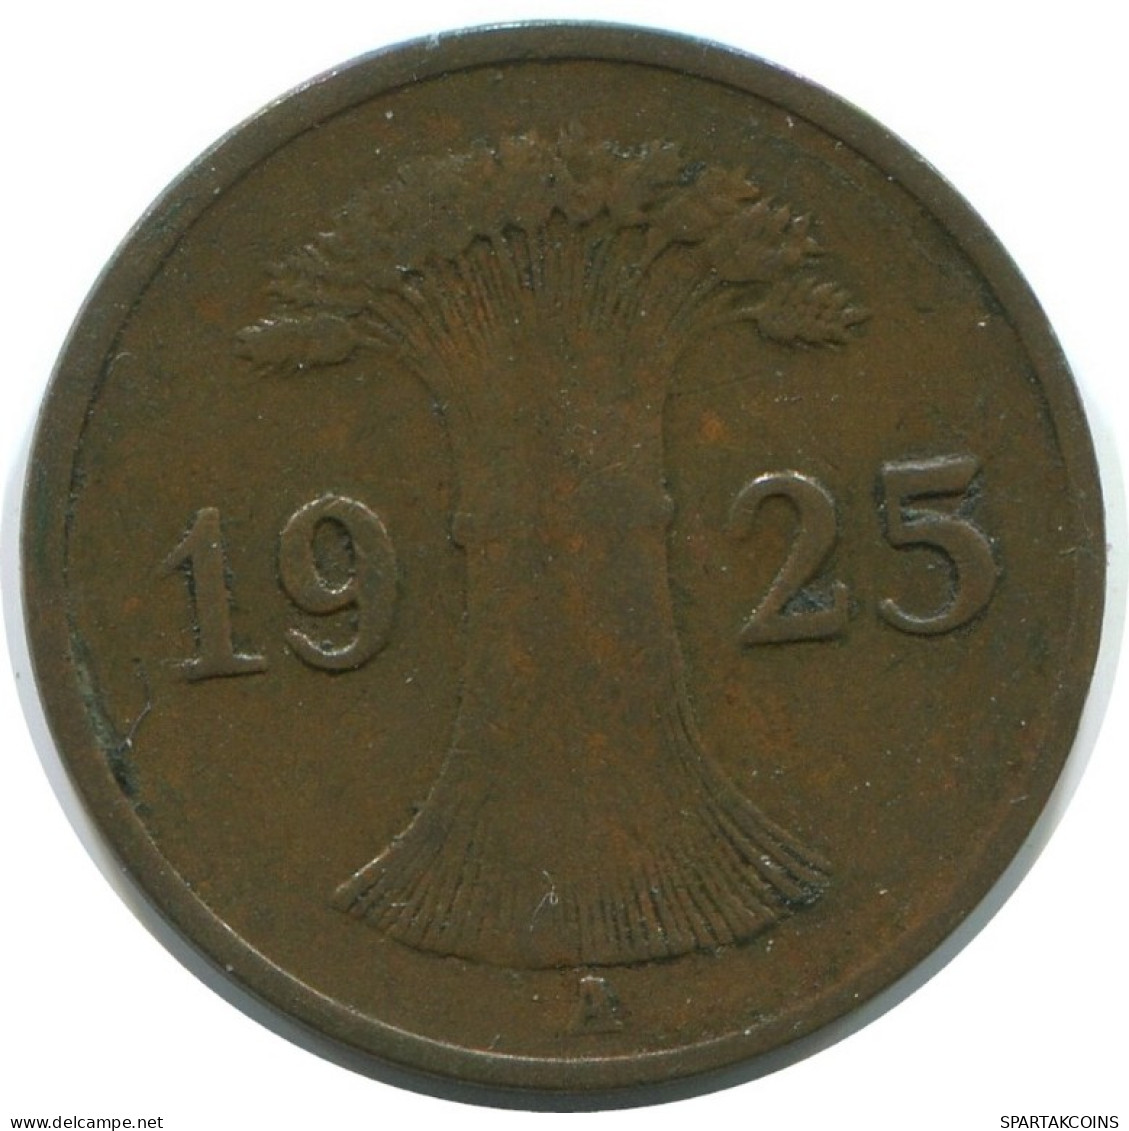 1 REICHSPFENNIG 1925 A ALEMANIA Moneda GERMANY #AE227.E.A - 1 Rentenpfennig & 1 Reichspfennig